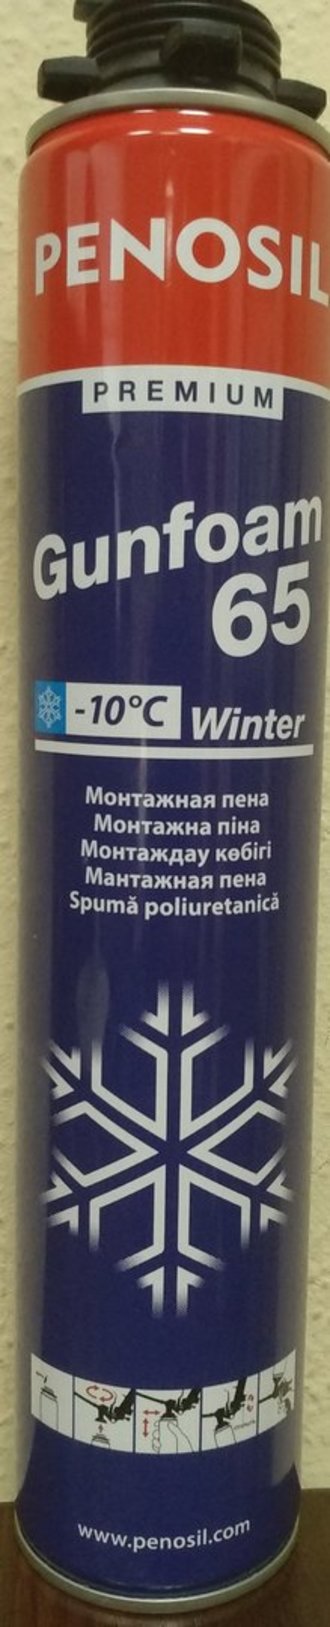 Монтажная пена Penosil Premium Winter